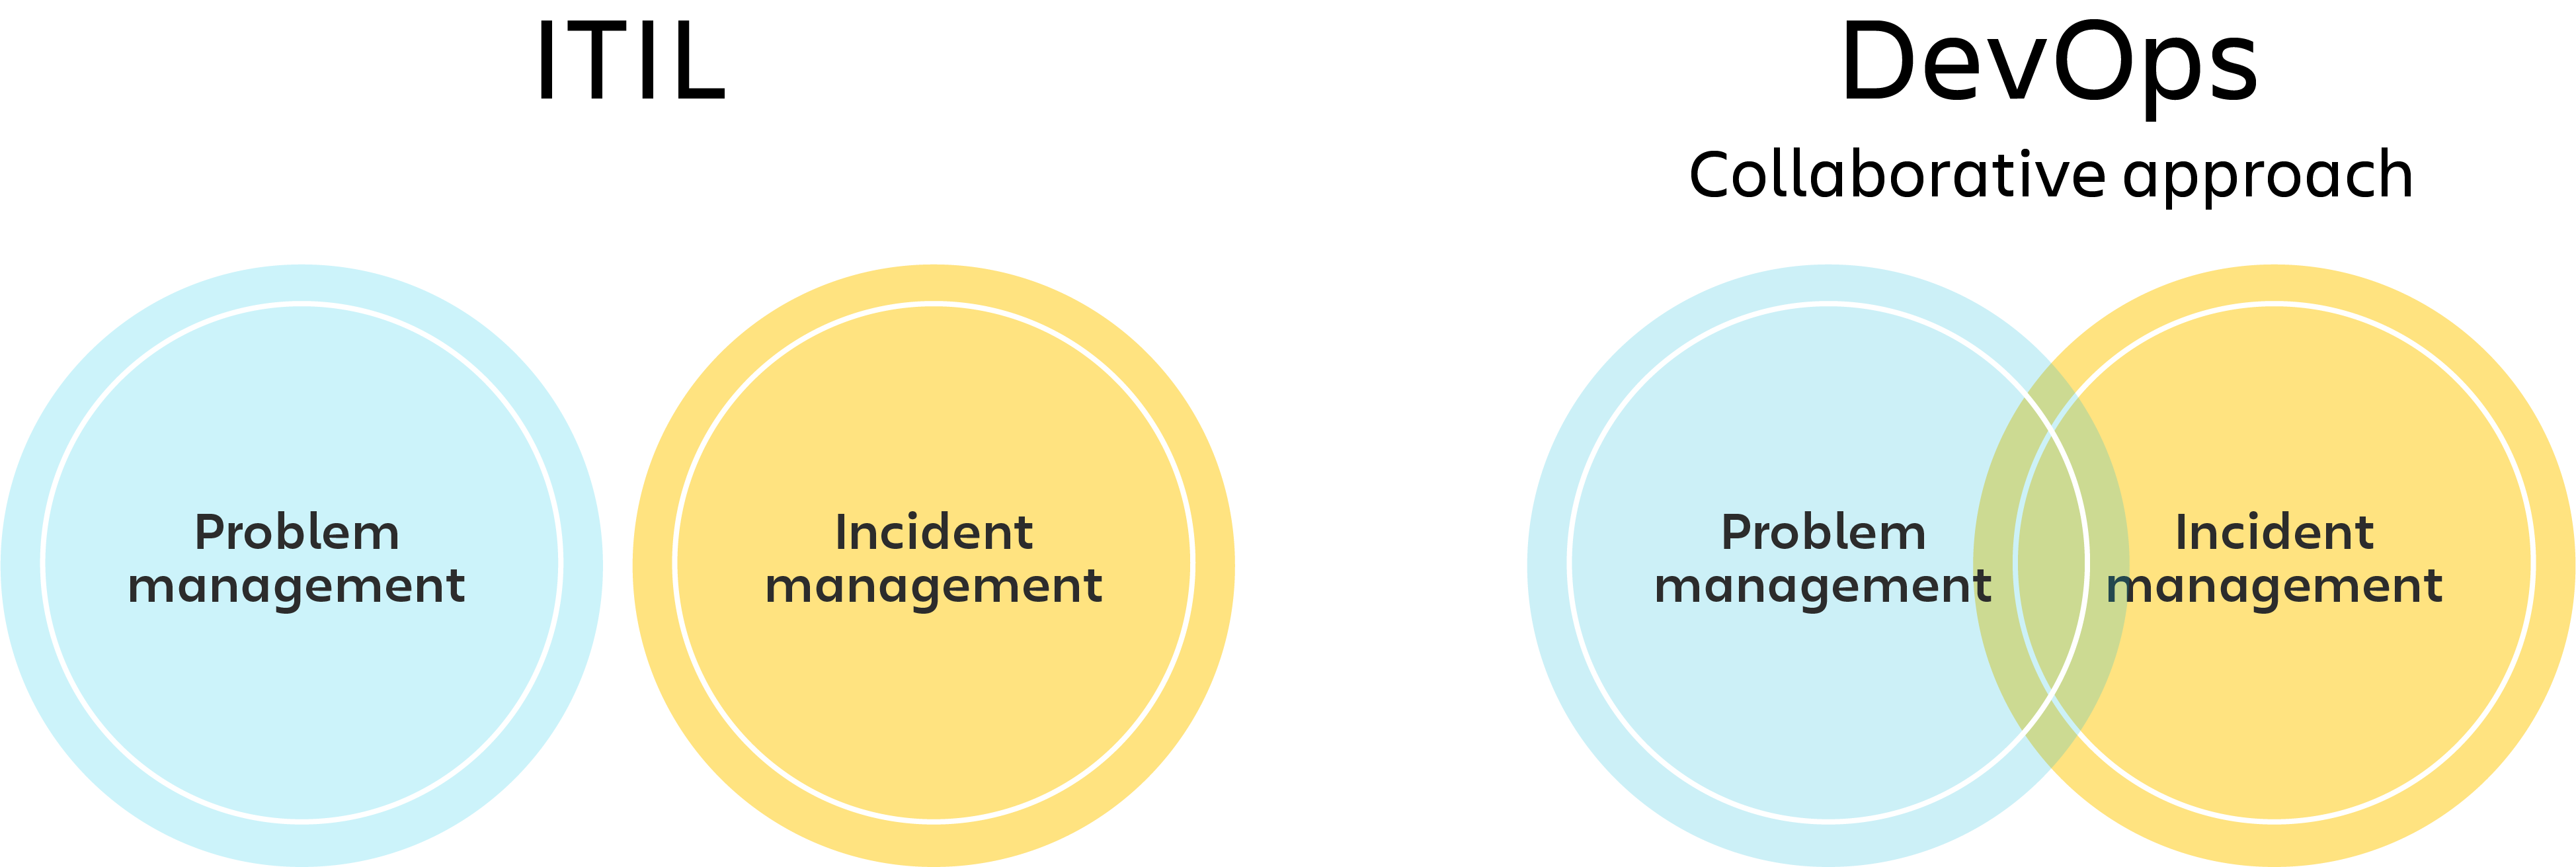 Изображение ITIL с отдельными кругами для управления проблемами и инцидентами и изображение DevOps с диаграммой Венна для управления проблемами и инцидентами